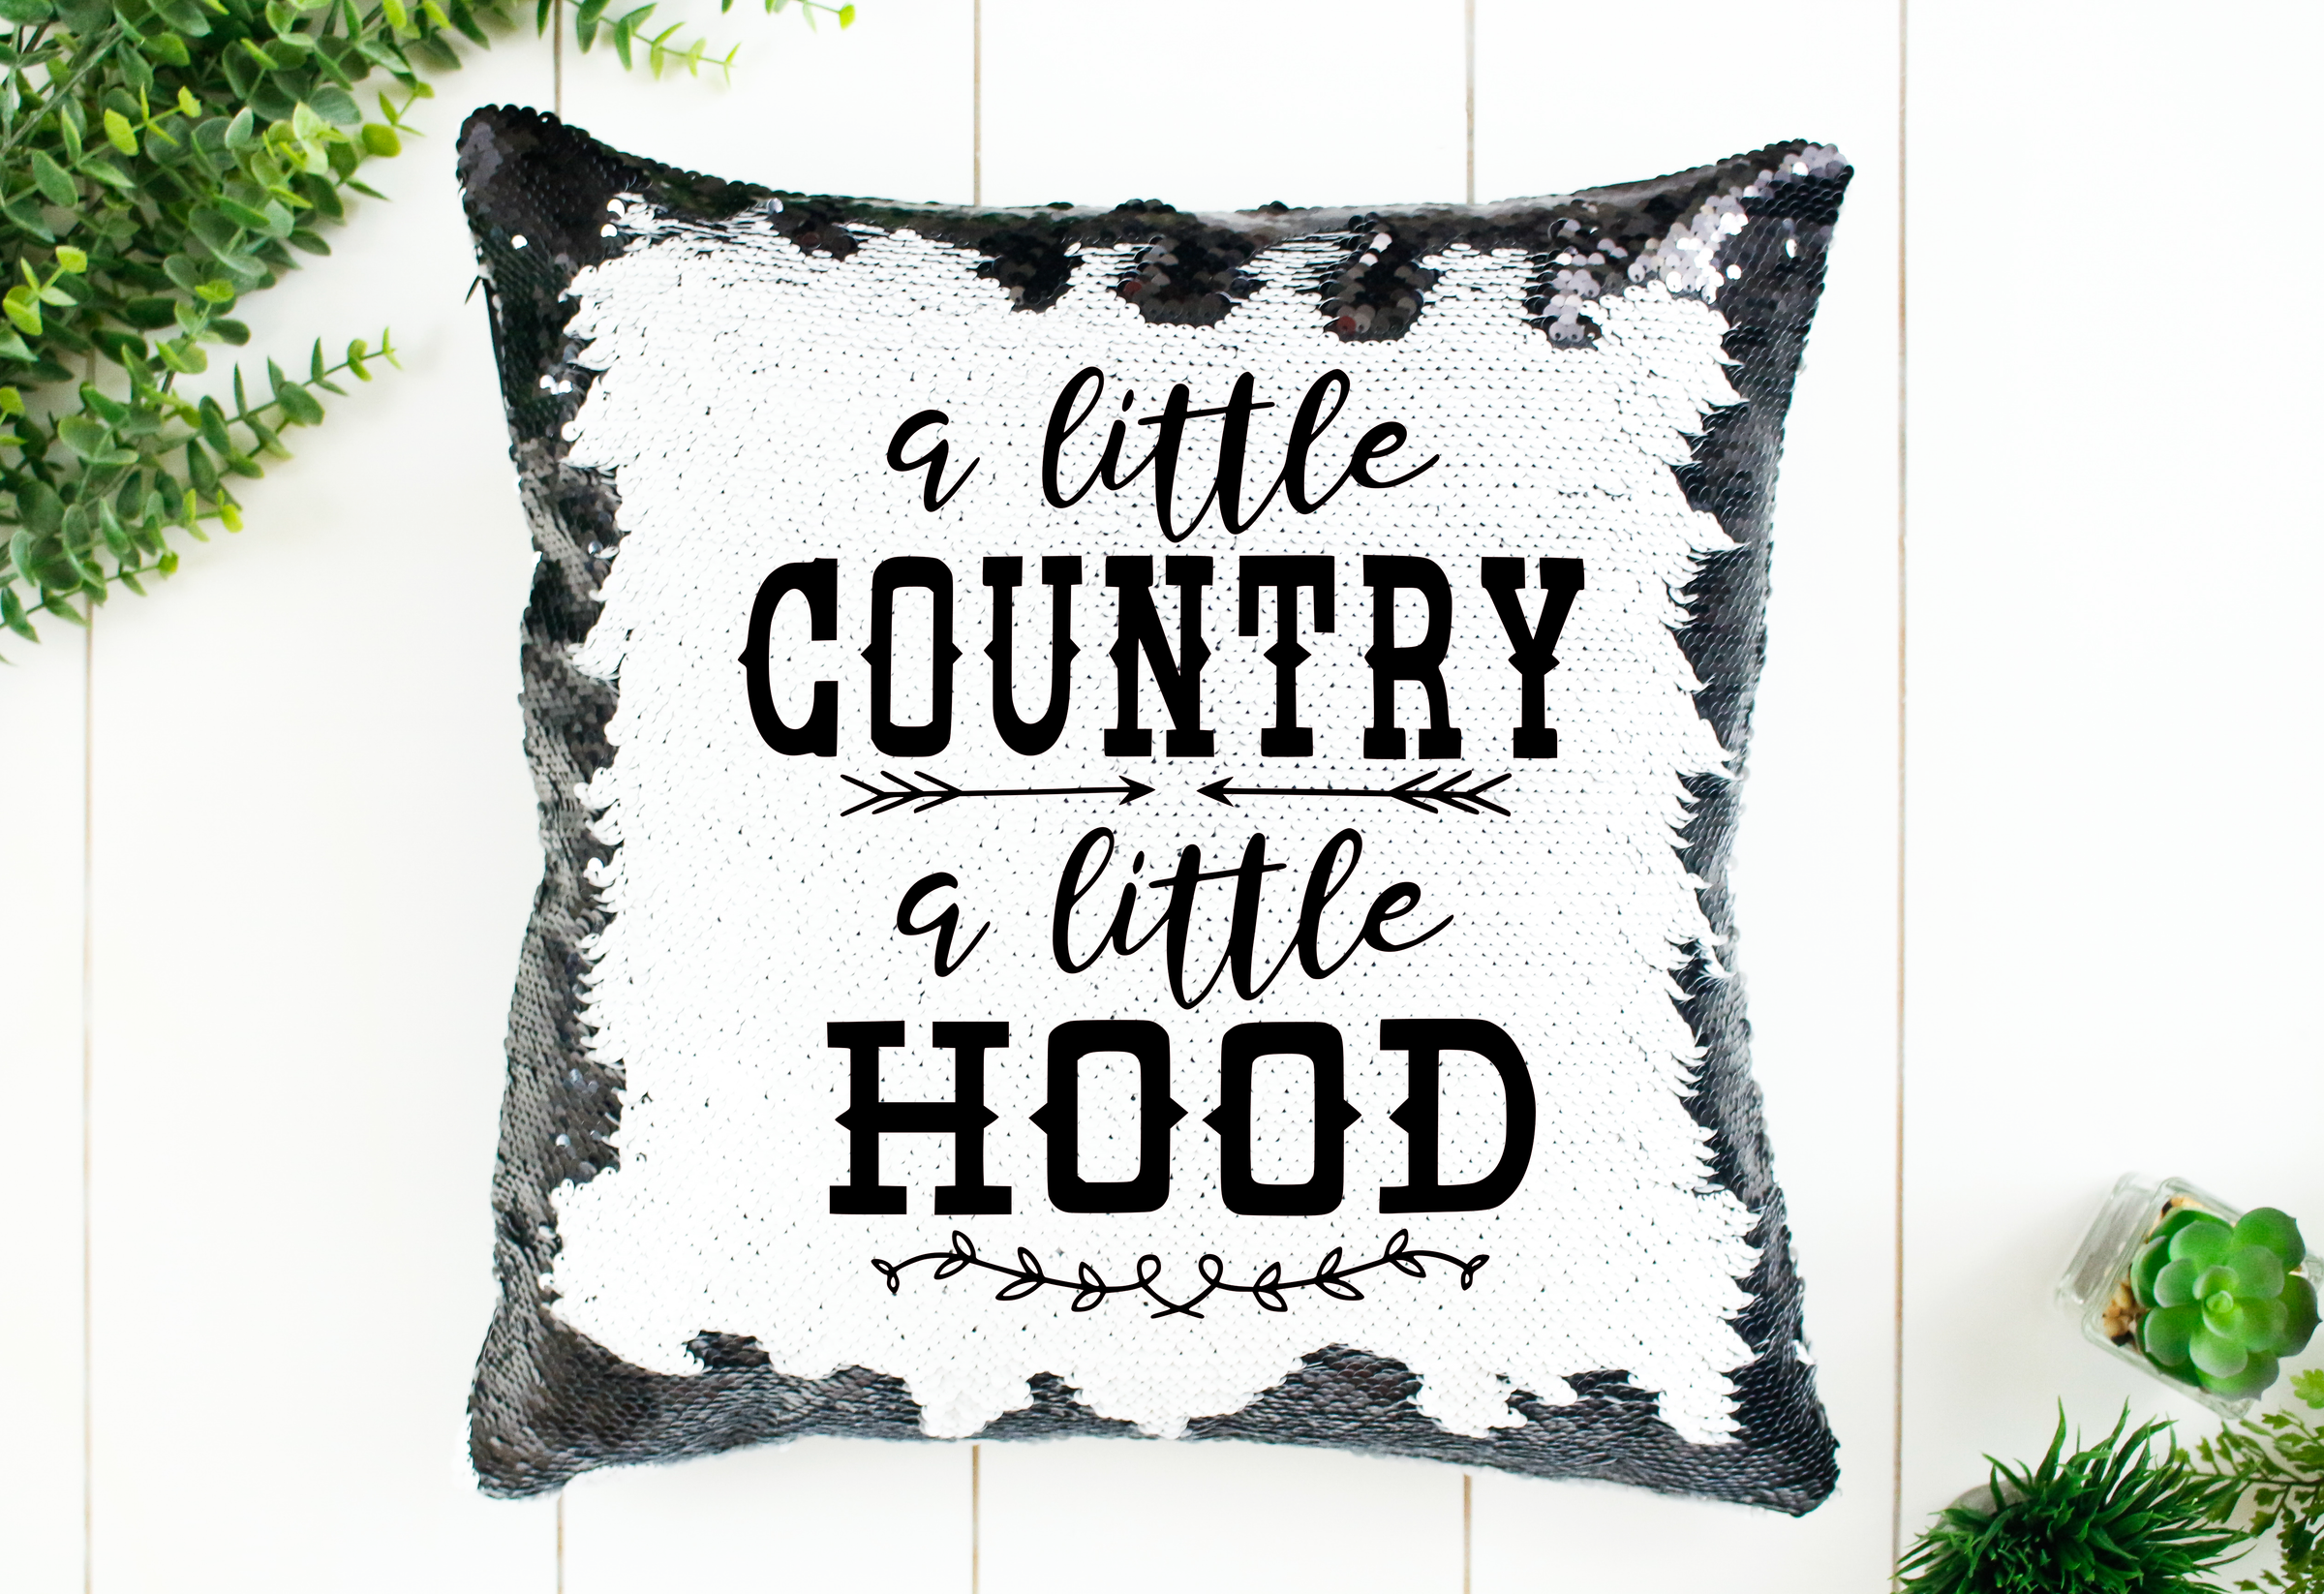 A Little Country a Little Hood Sequin Pillow